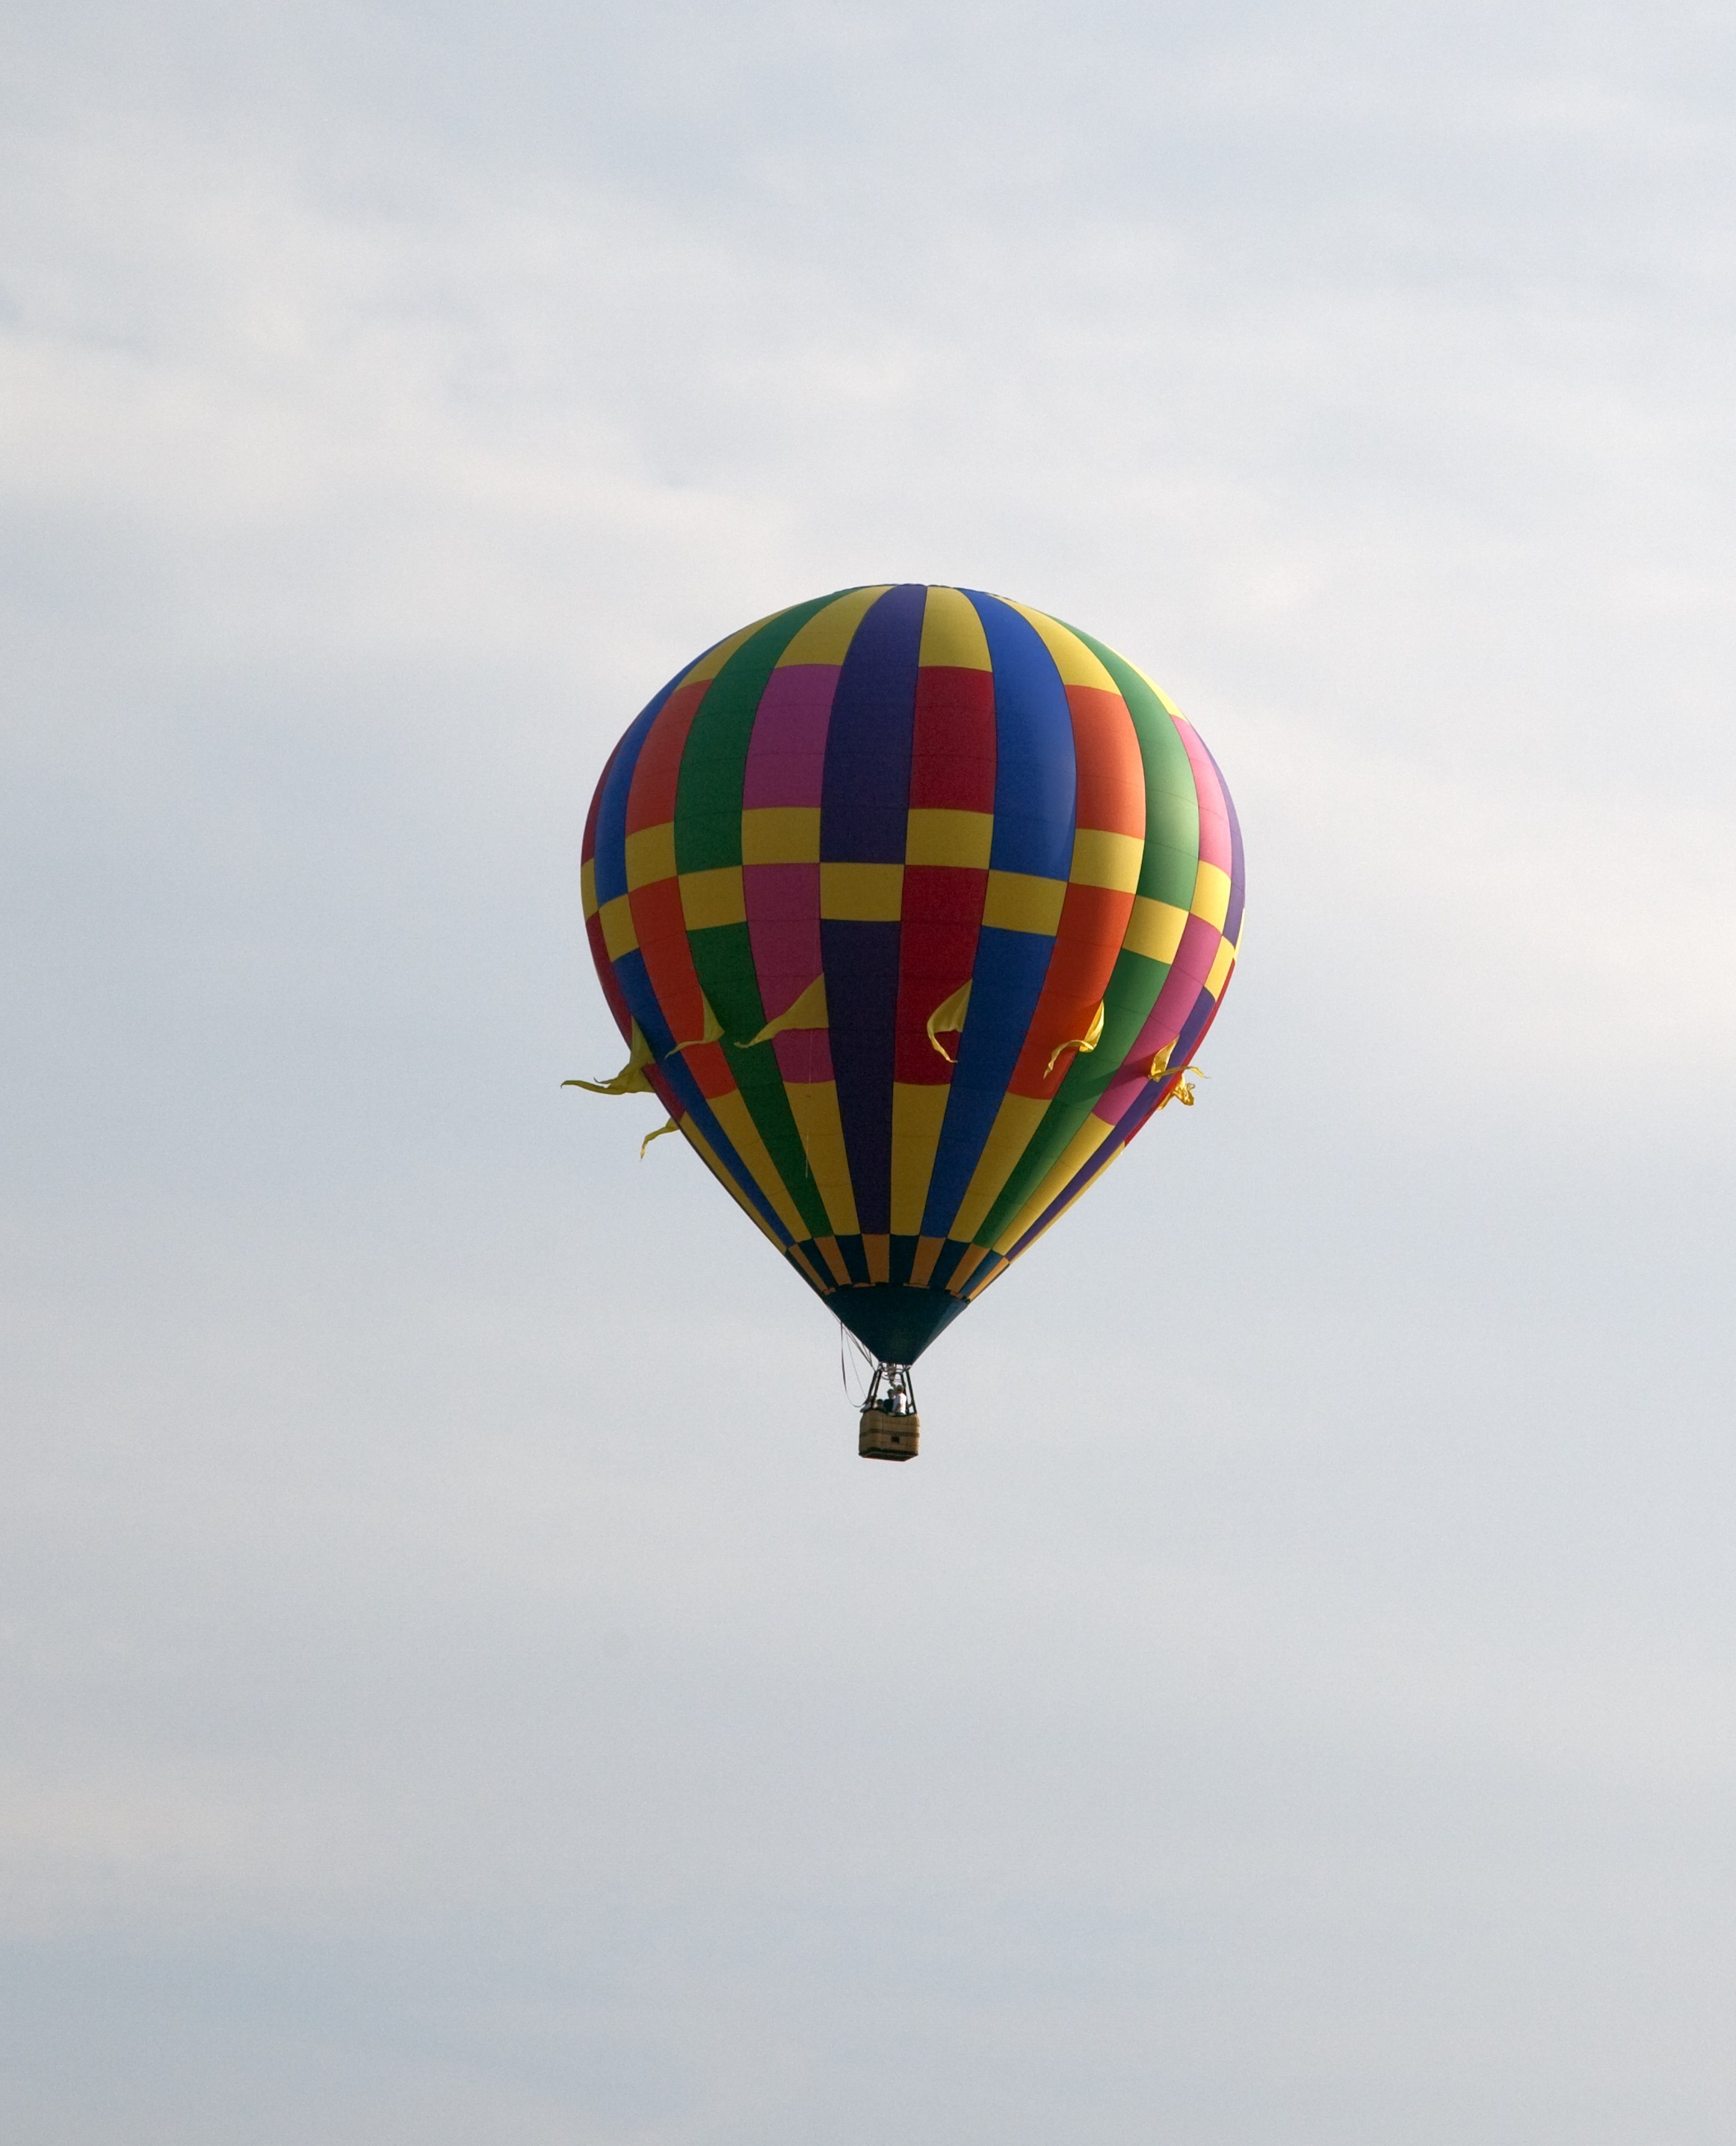 Hot air balloon ride photo